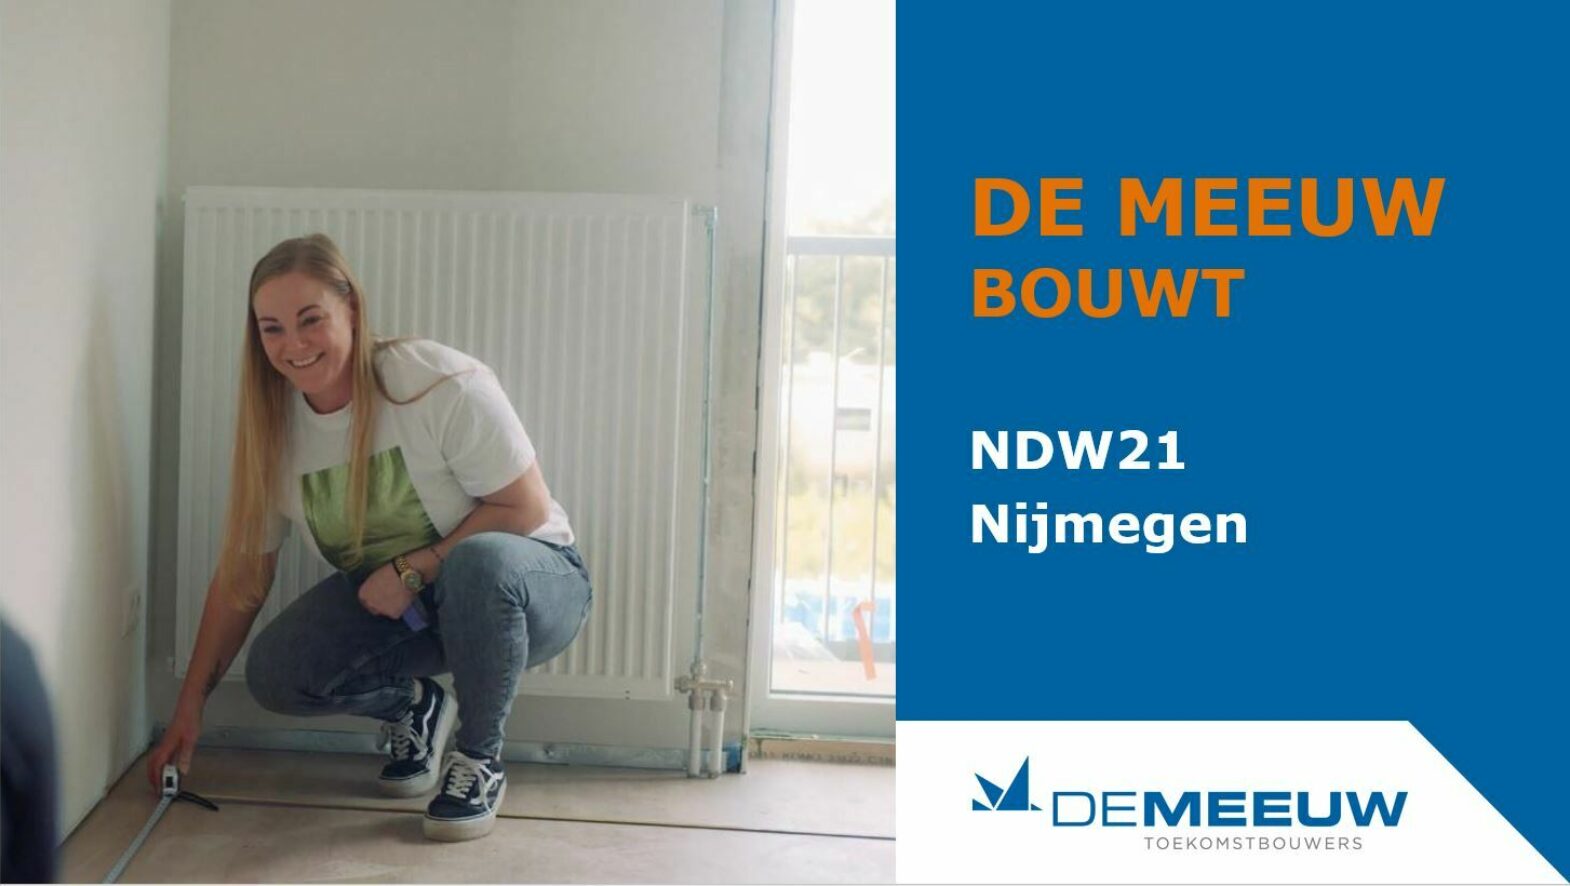 DM bouwt NDW21